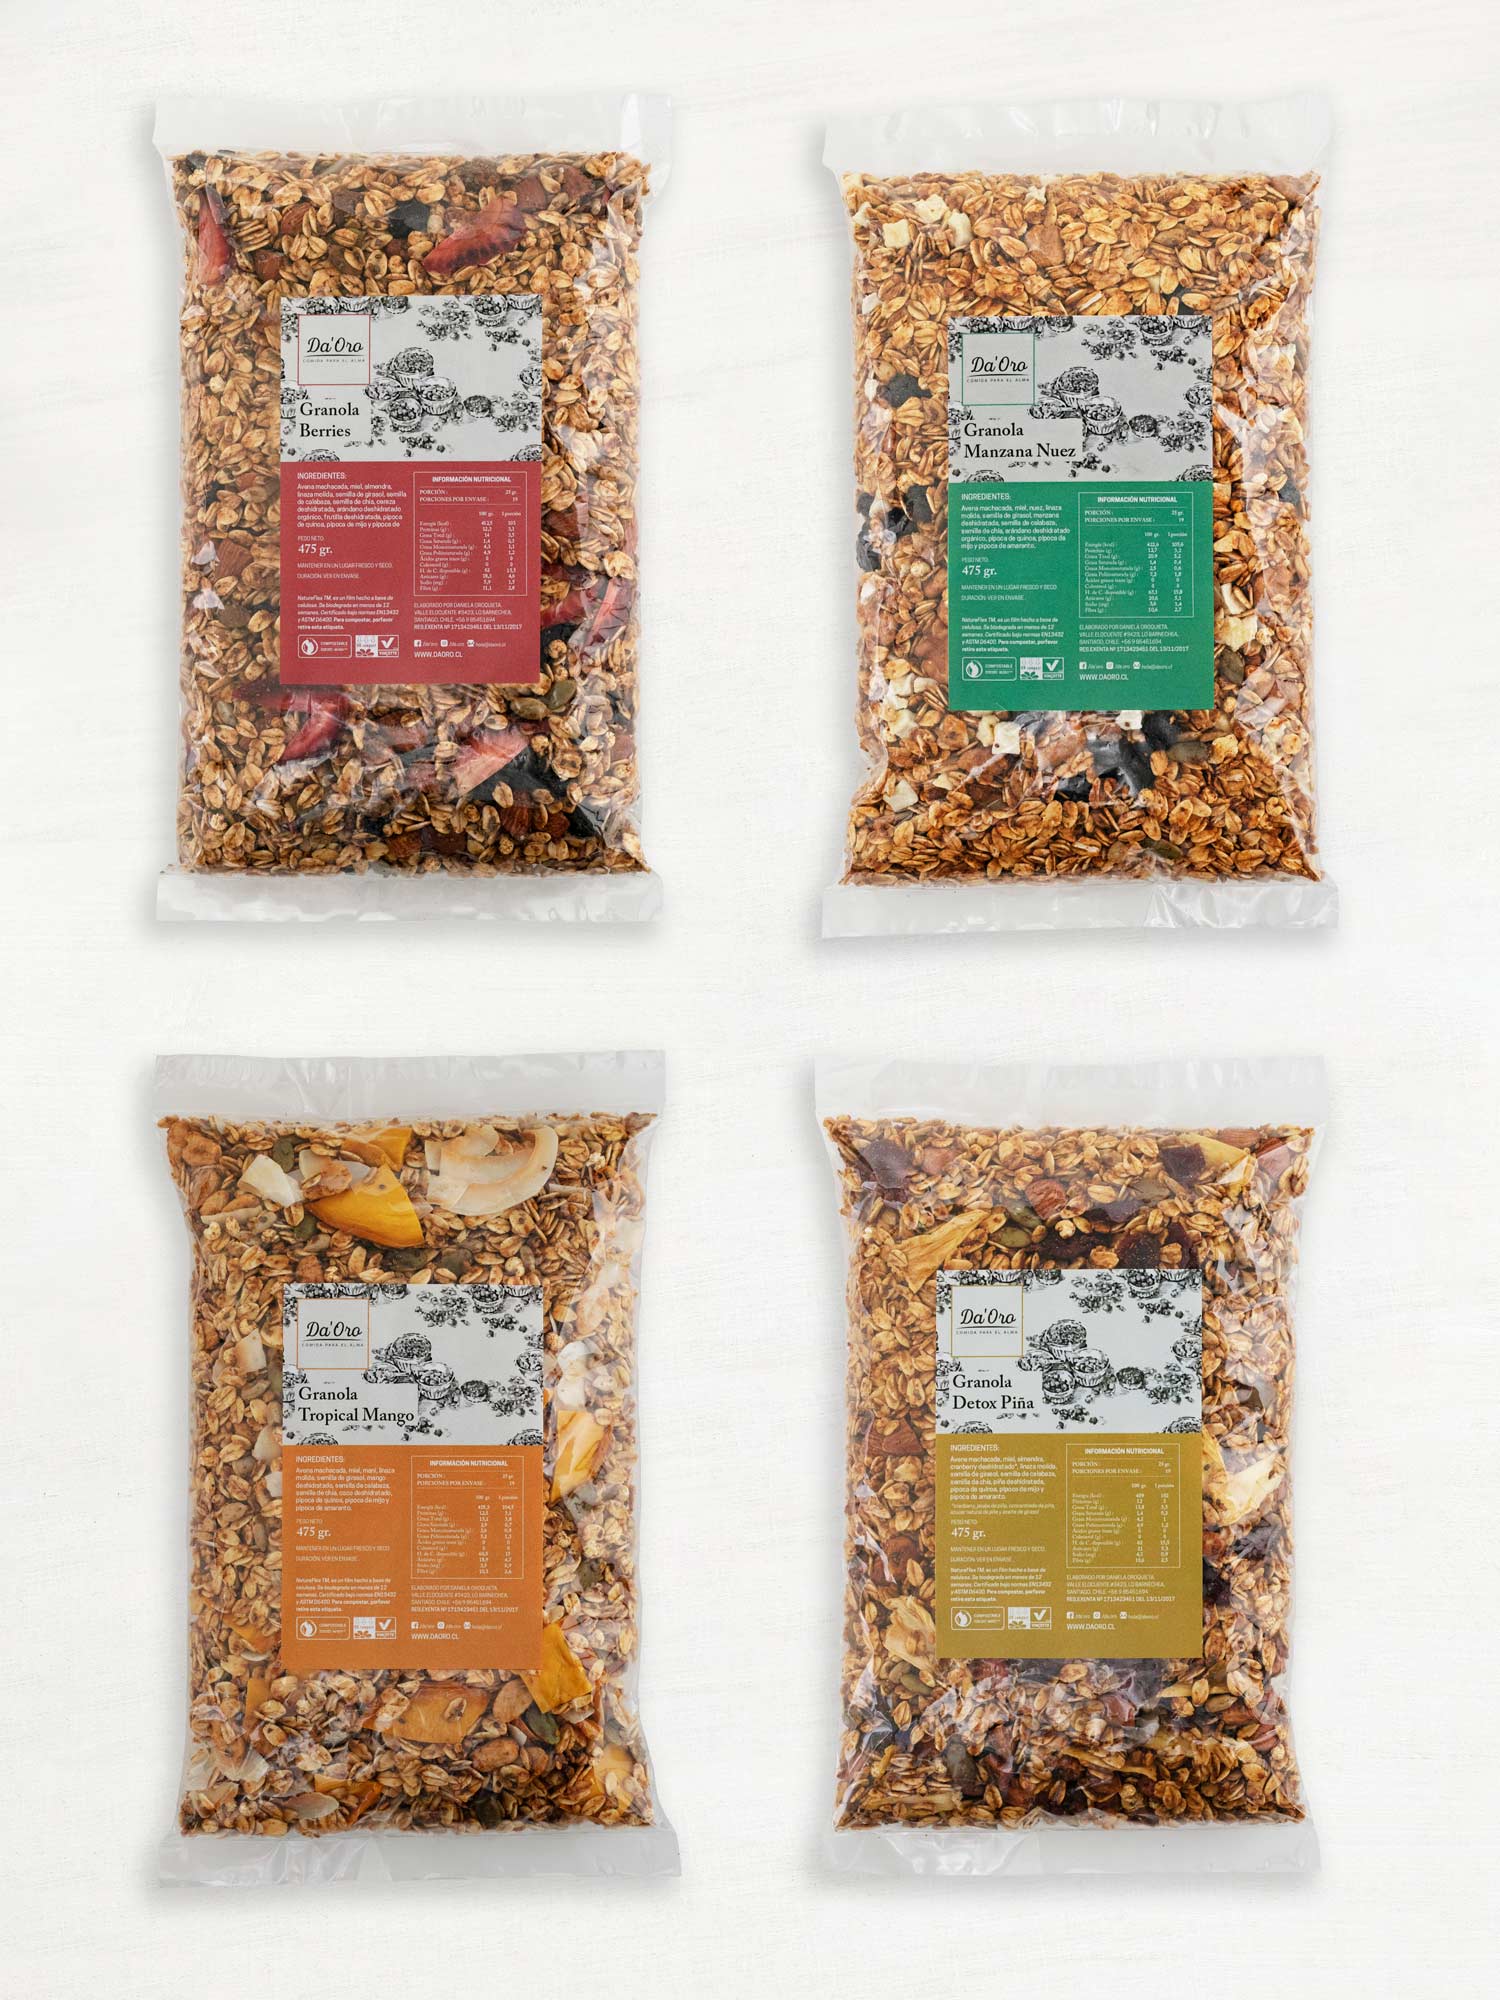 Cuatro bolsas de granola de 475 gramos de distintos sabores